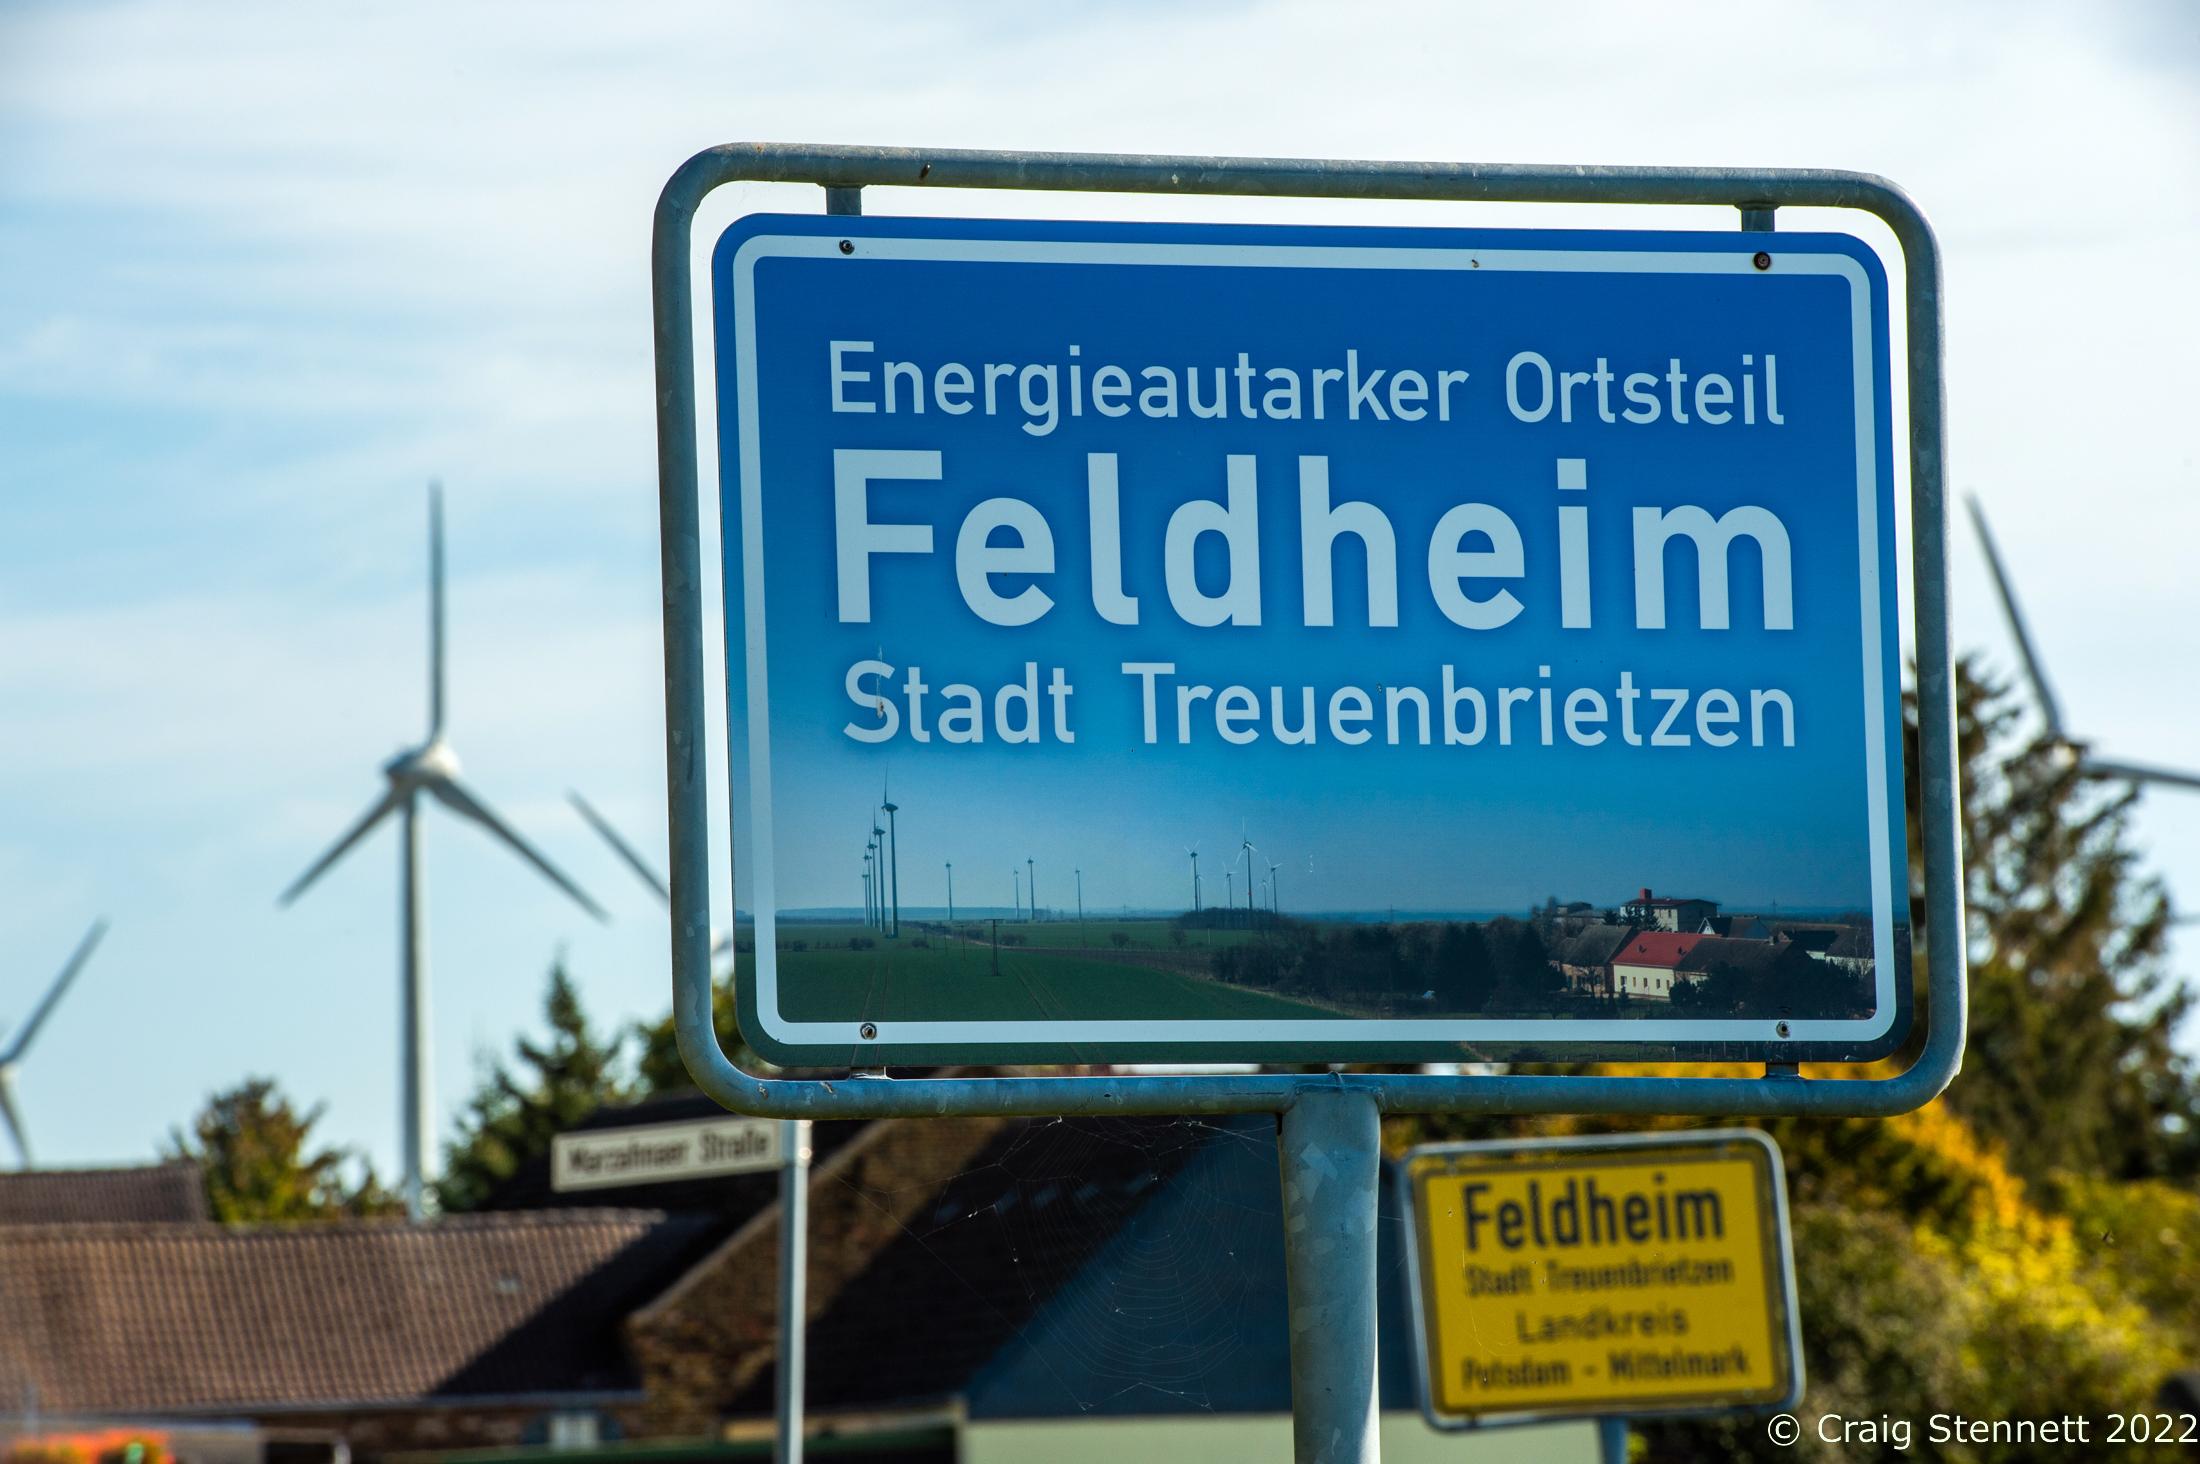 Feldheim, Germany 100% Energy self-sufficient-Getty Editorial